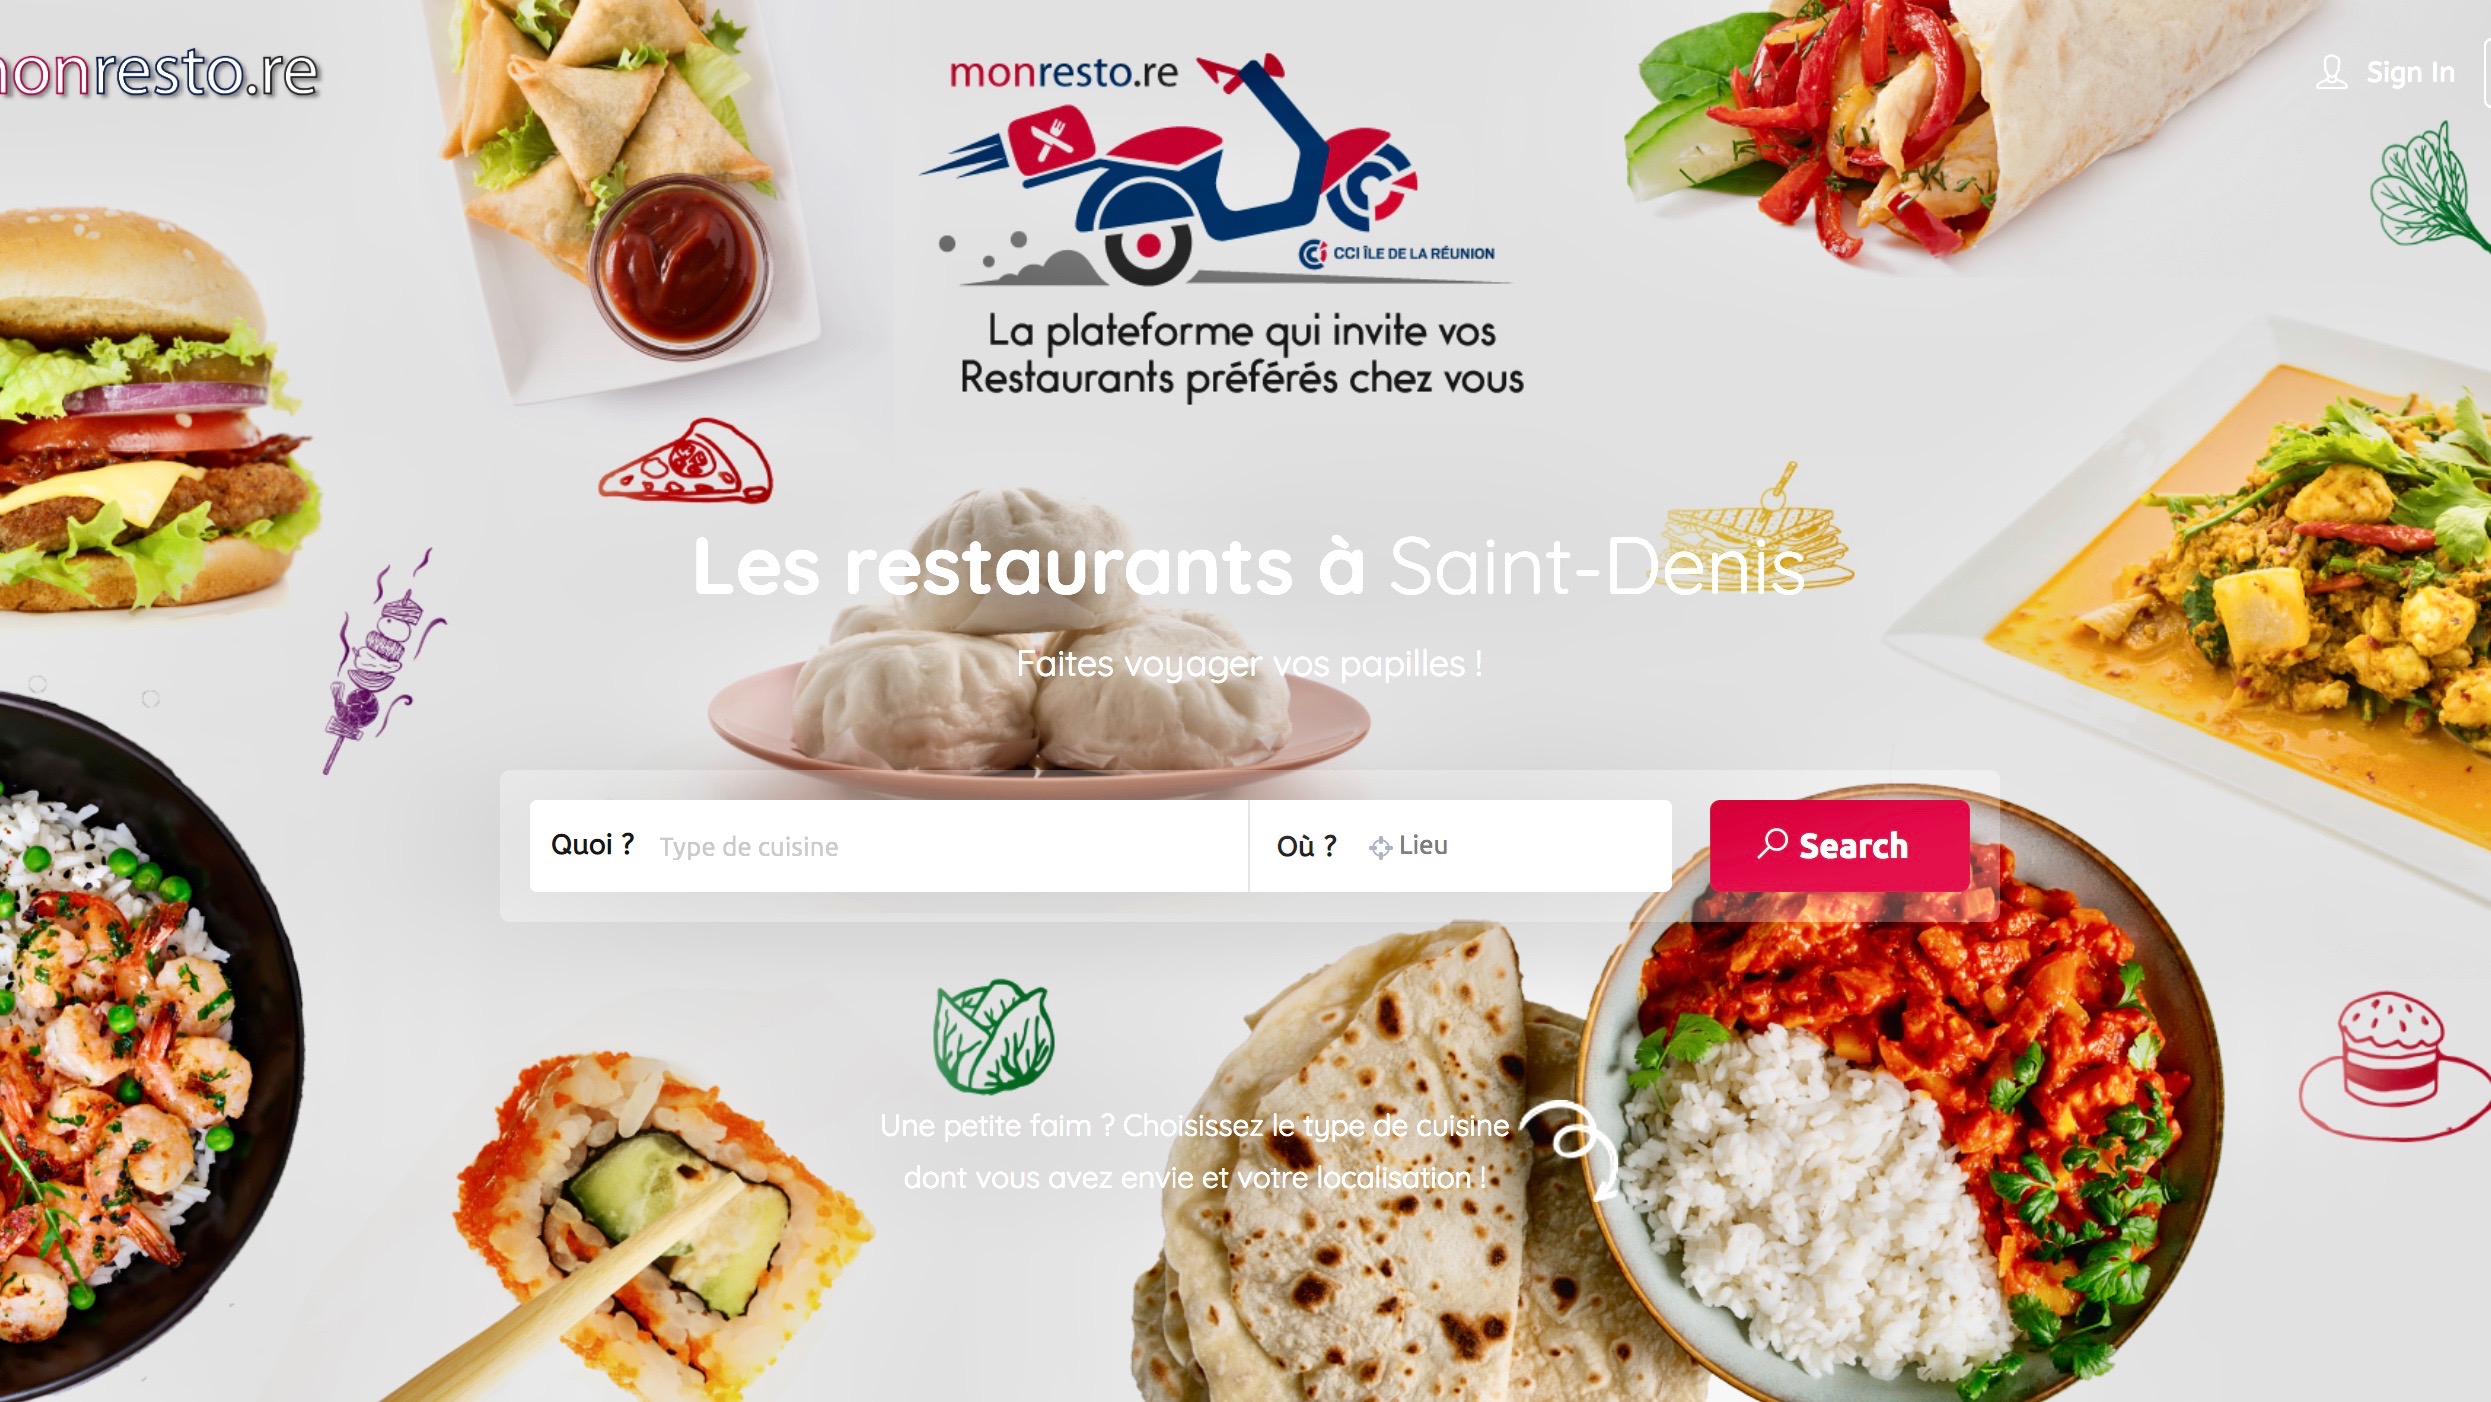 Monresto.re: La CCI met en ligne un annuaire des restaurants proposant des plats à emporter